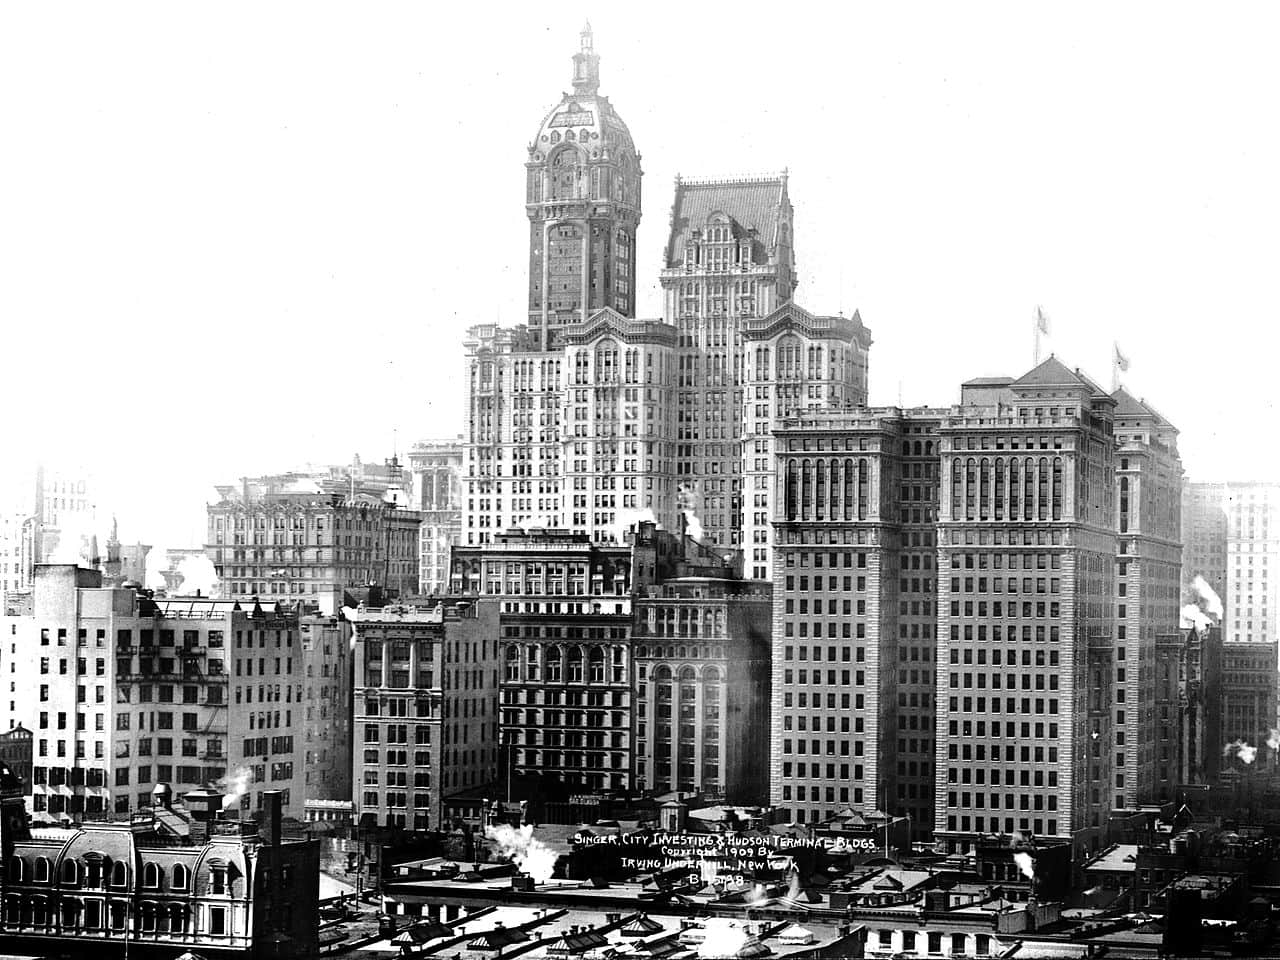 ניו יורק בתחילת המאה ה-20 (צילום: ספריית הקונגרס האמריקאי, חופשי לשימוש)